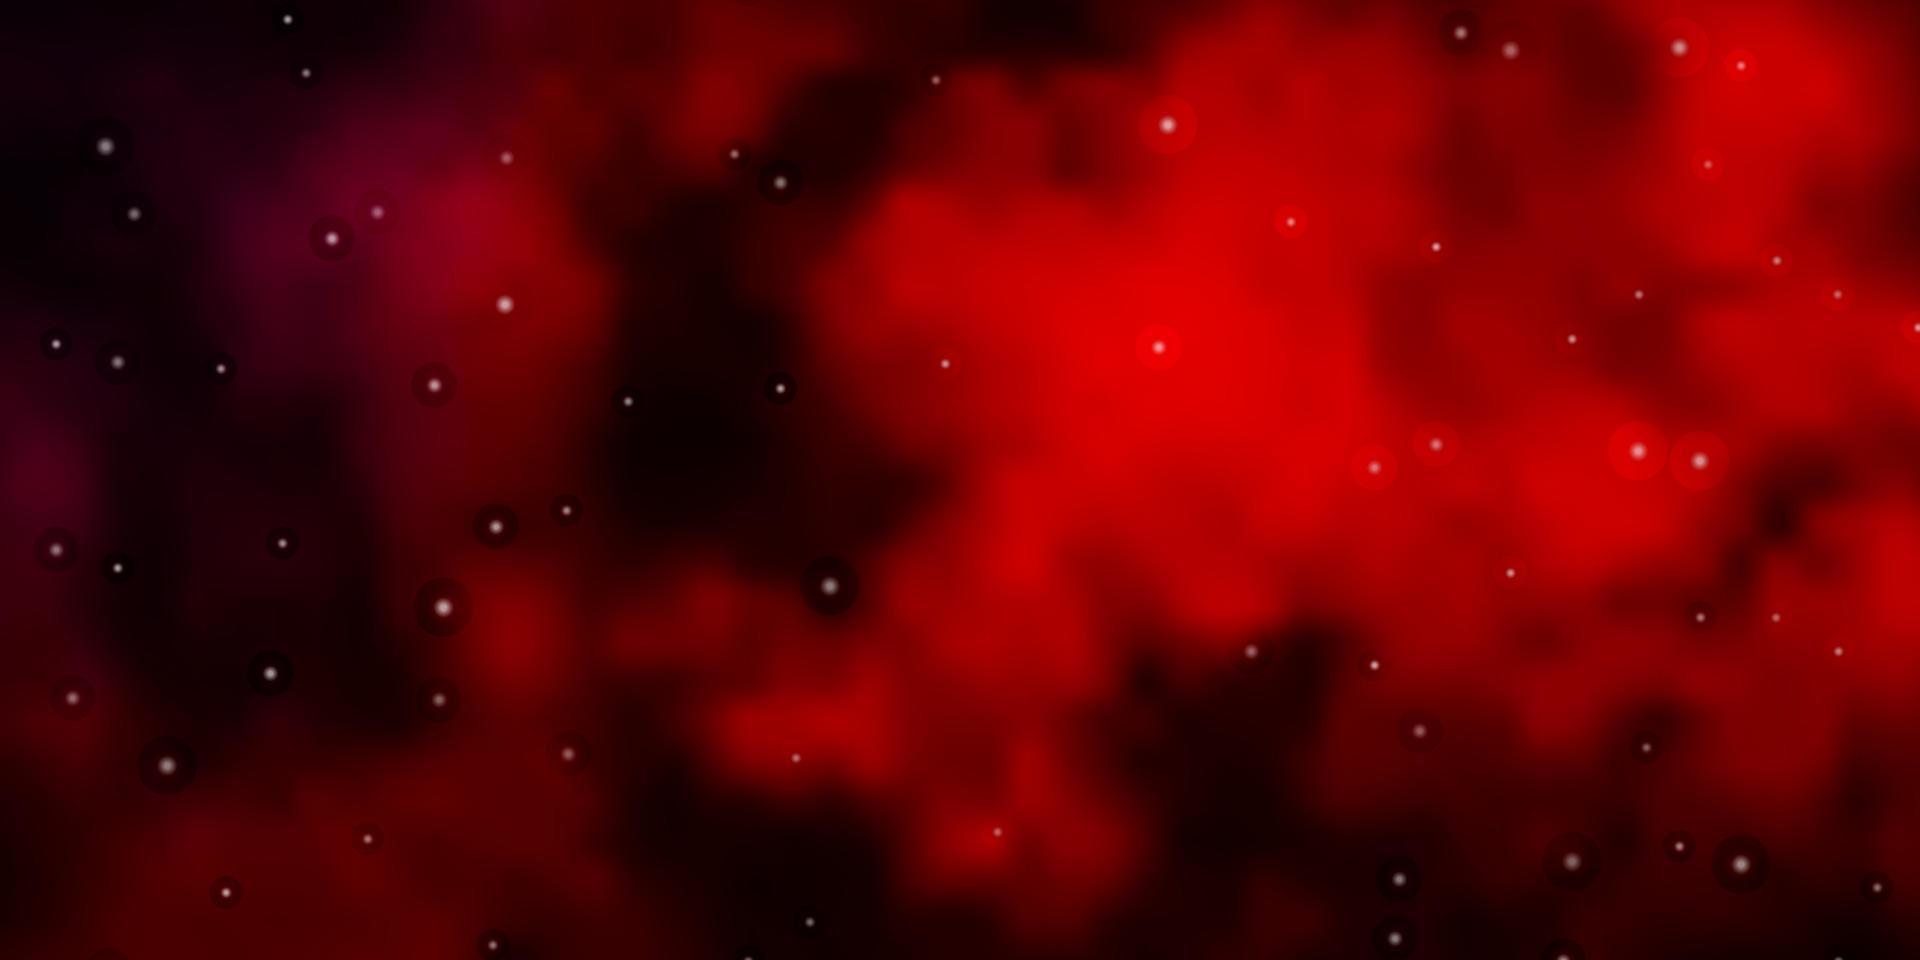 sfondo vettoriale rosso scuro con stelle colorate.